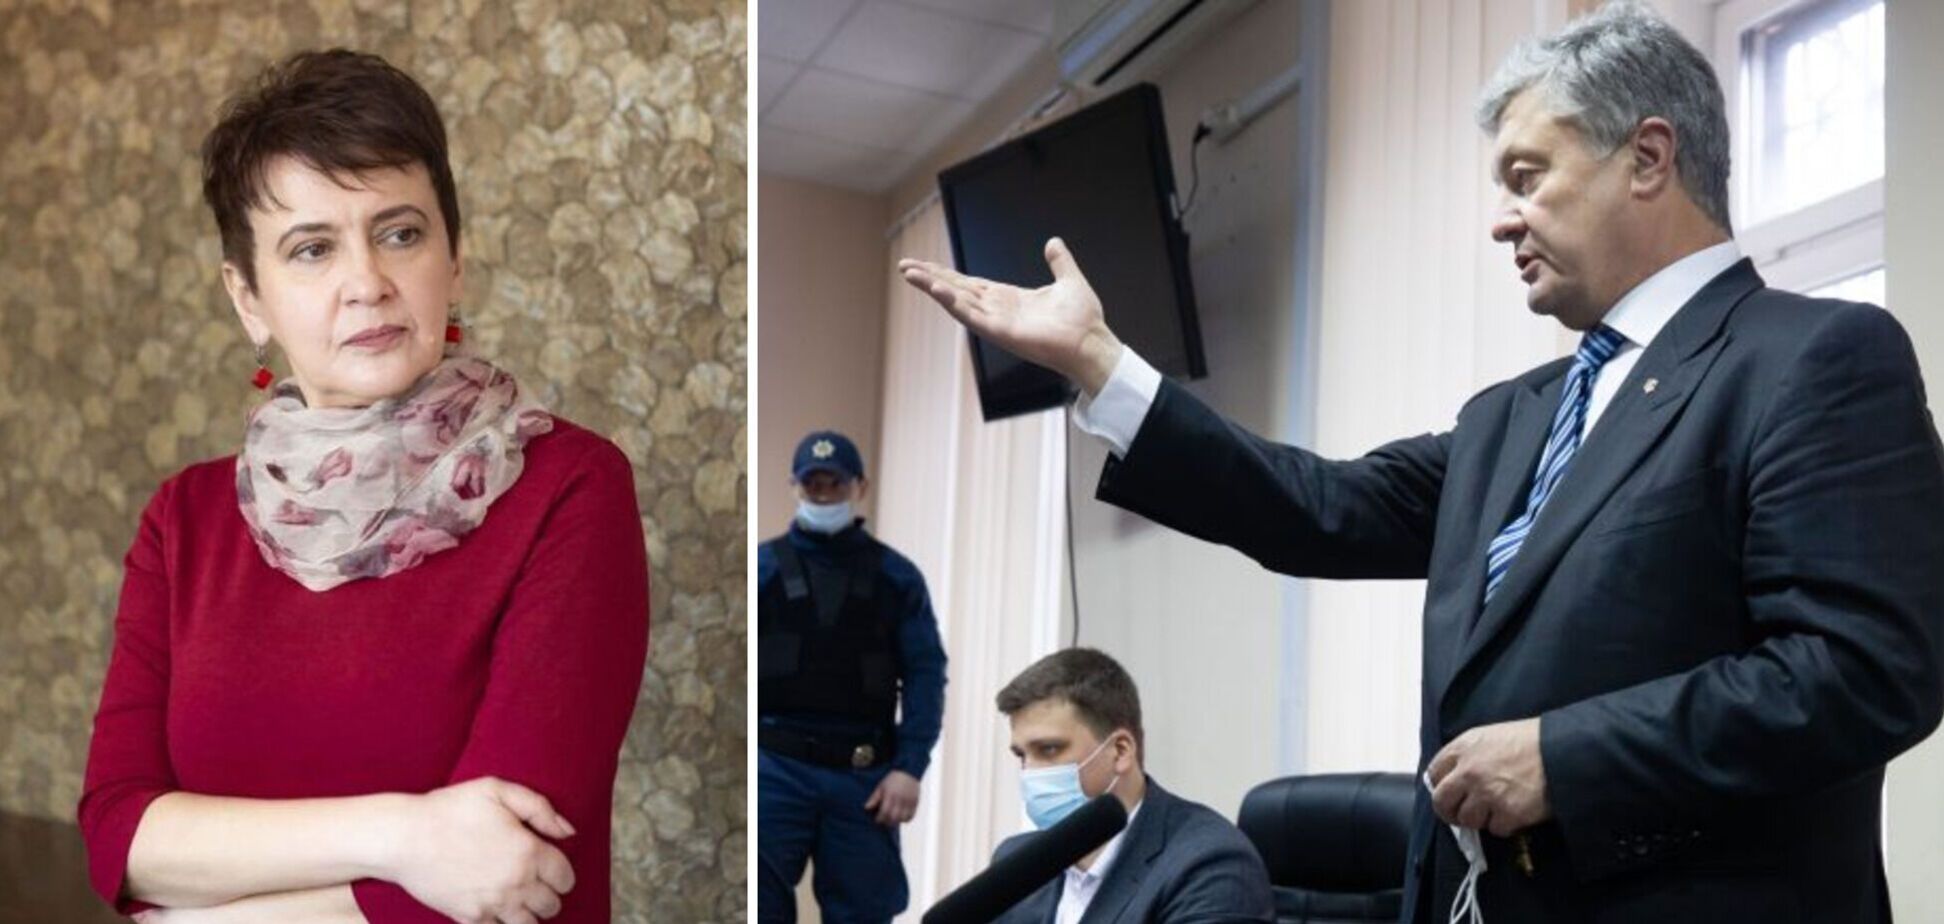 Забужко про суд над Порошенком: це копіпаст московського сценарію з Навальним